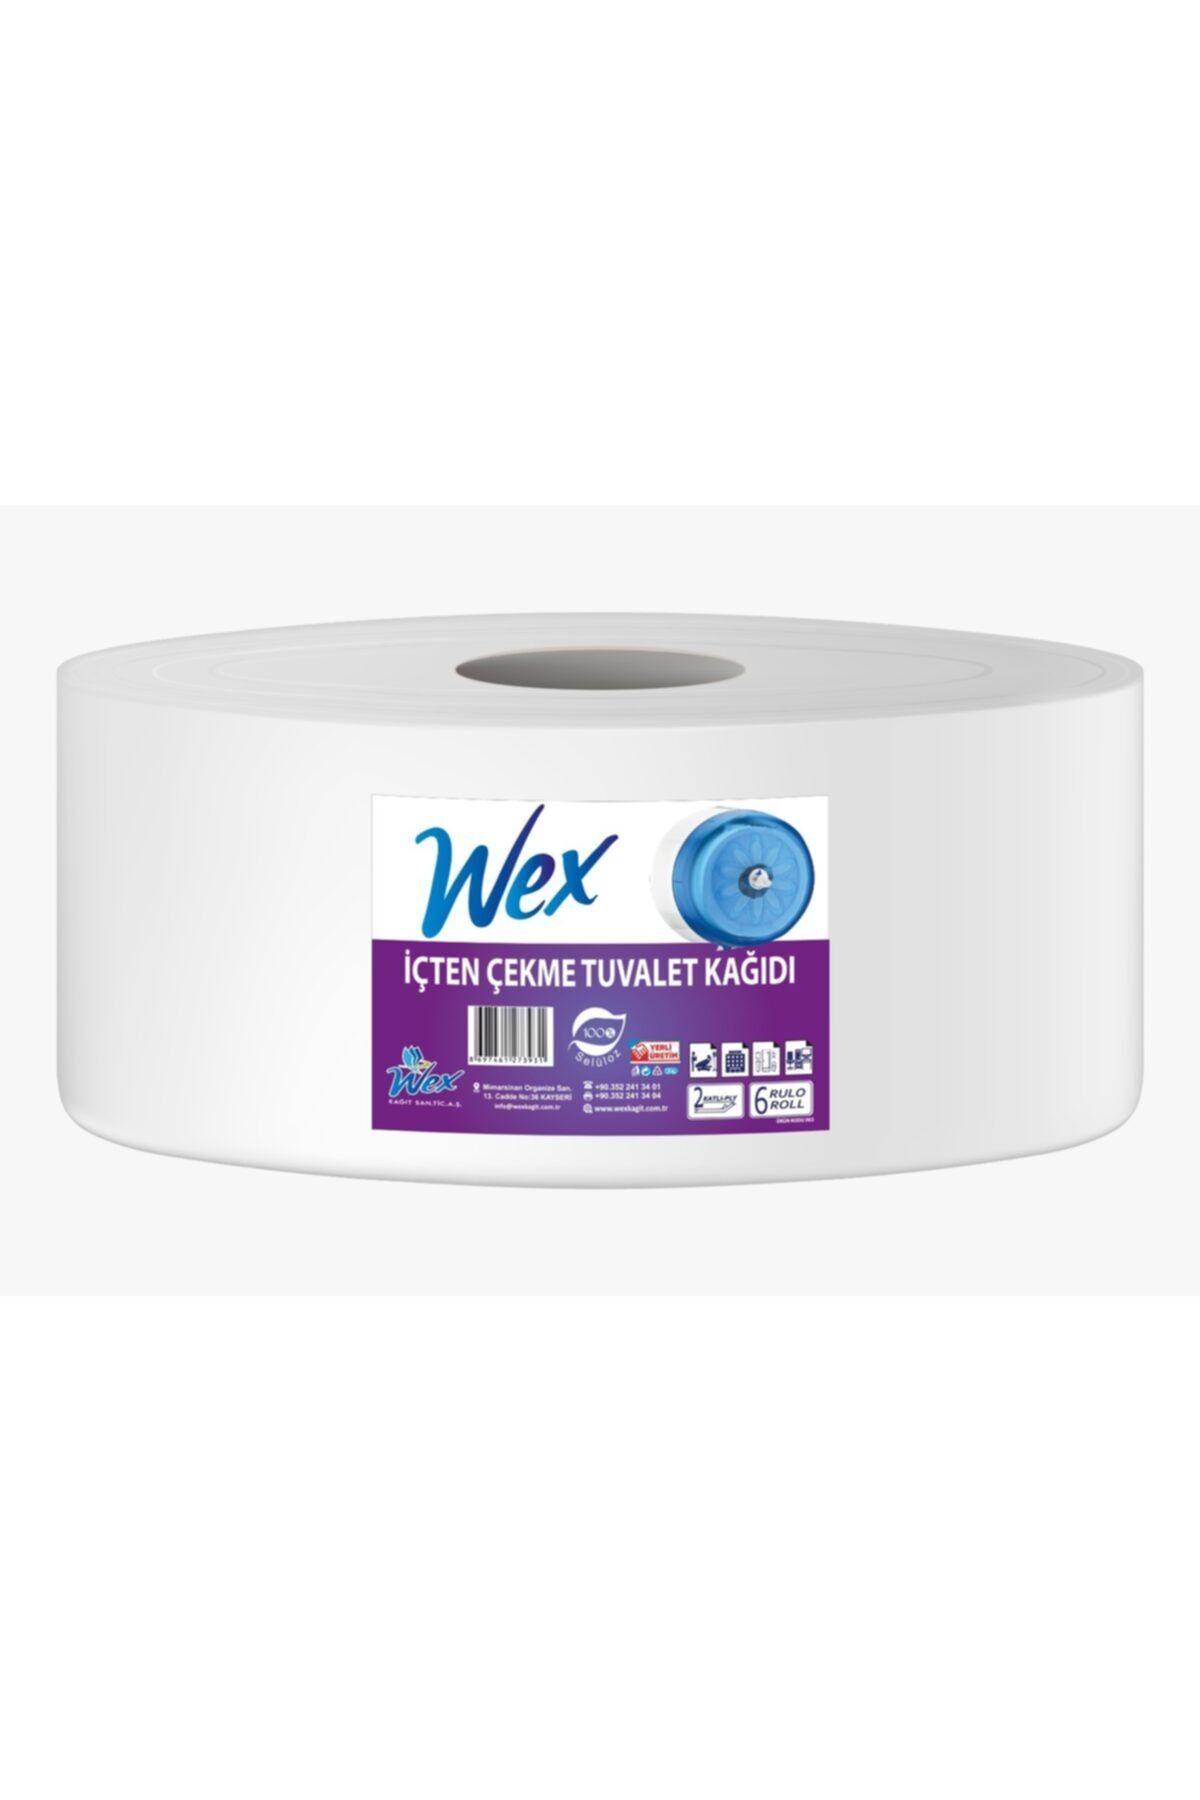 WEX Içten Çekmeli Tuvalet Kağıdı 4 Kg 6 Lı